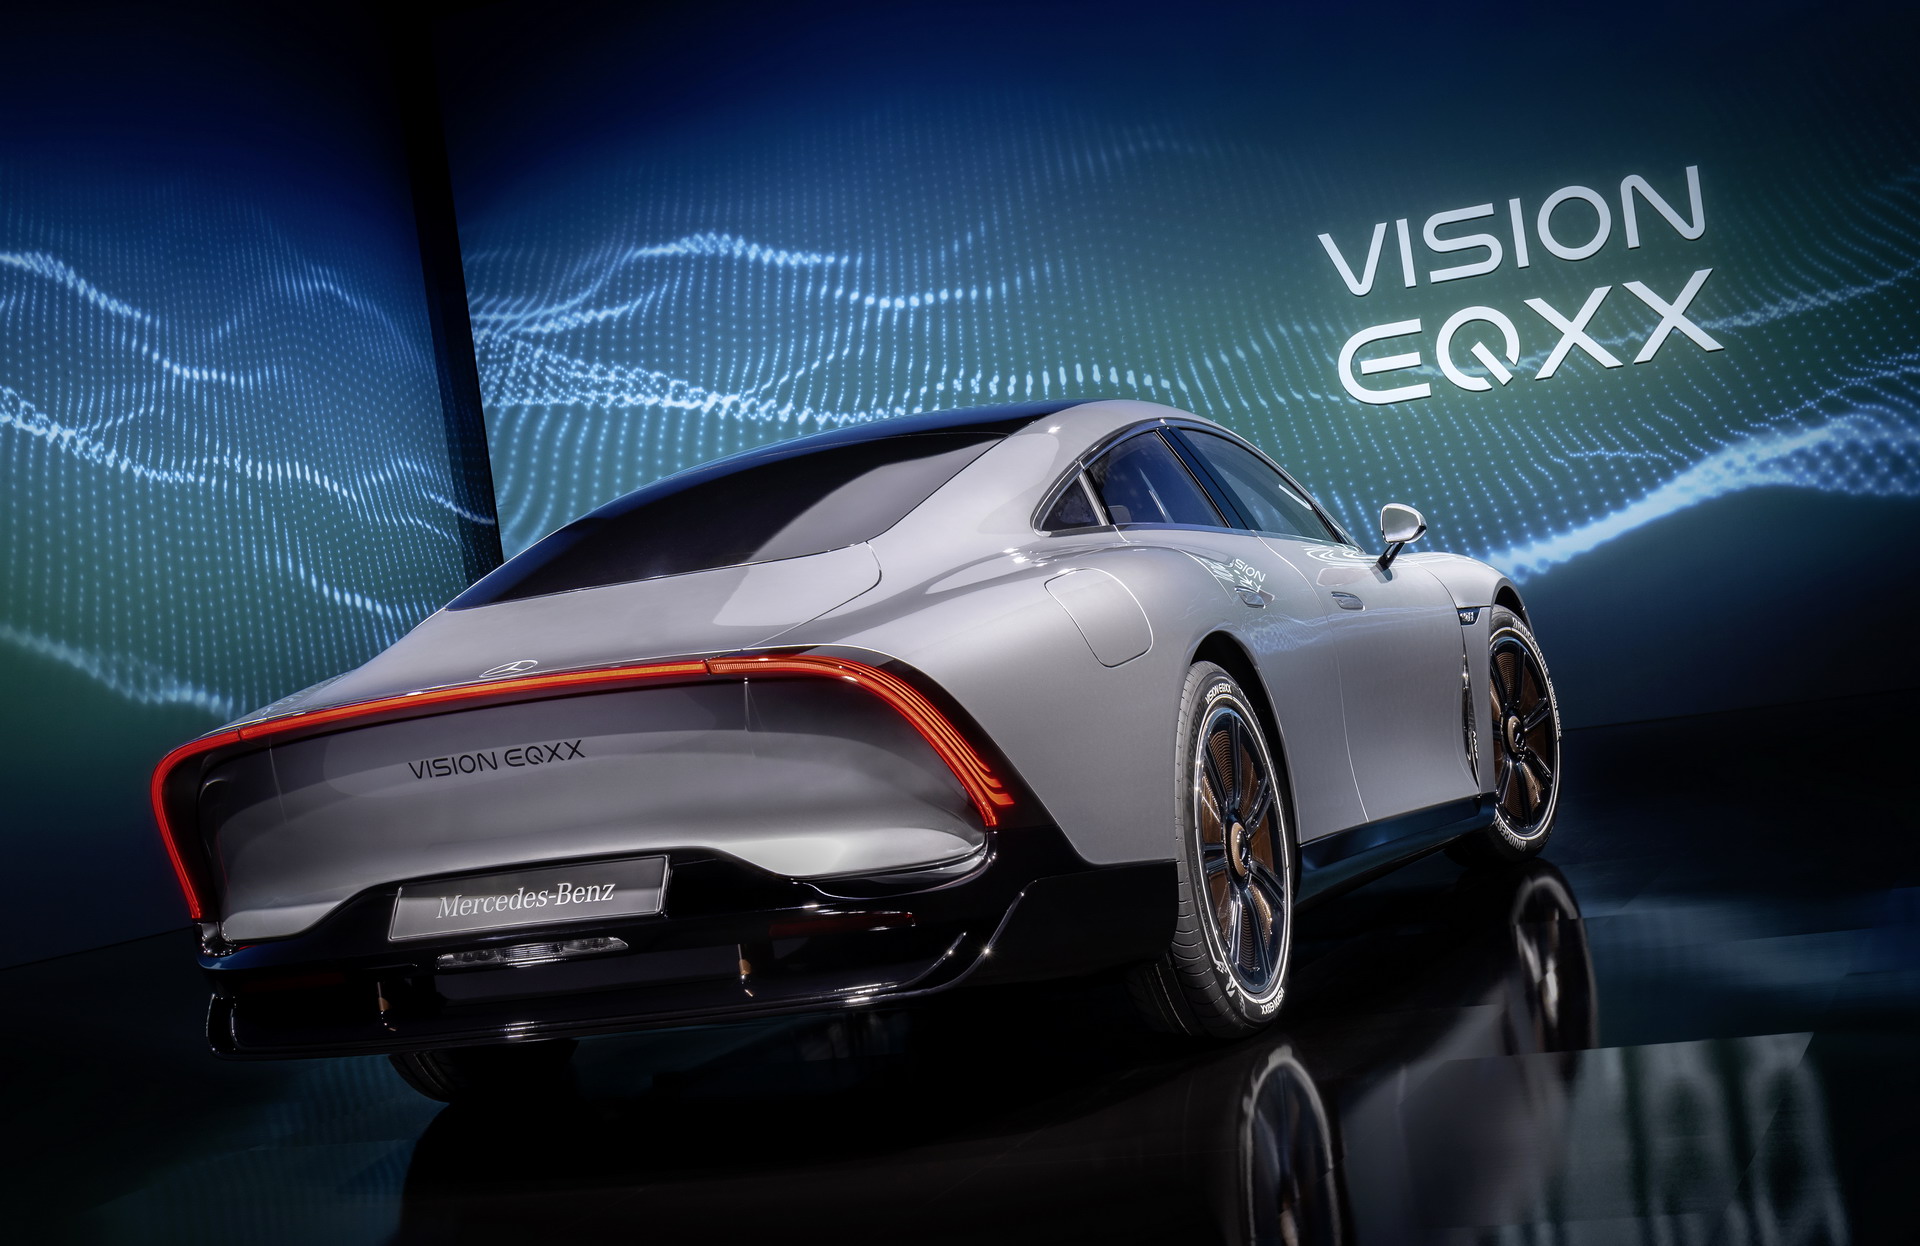 Технология Mercedes-Benz Vision EQXX будет применяться на серийных автомобилях